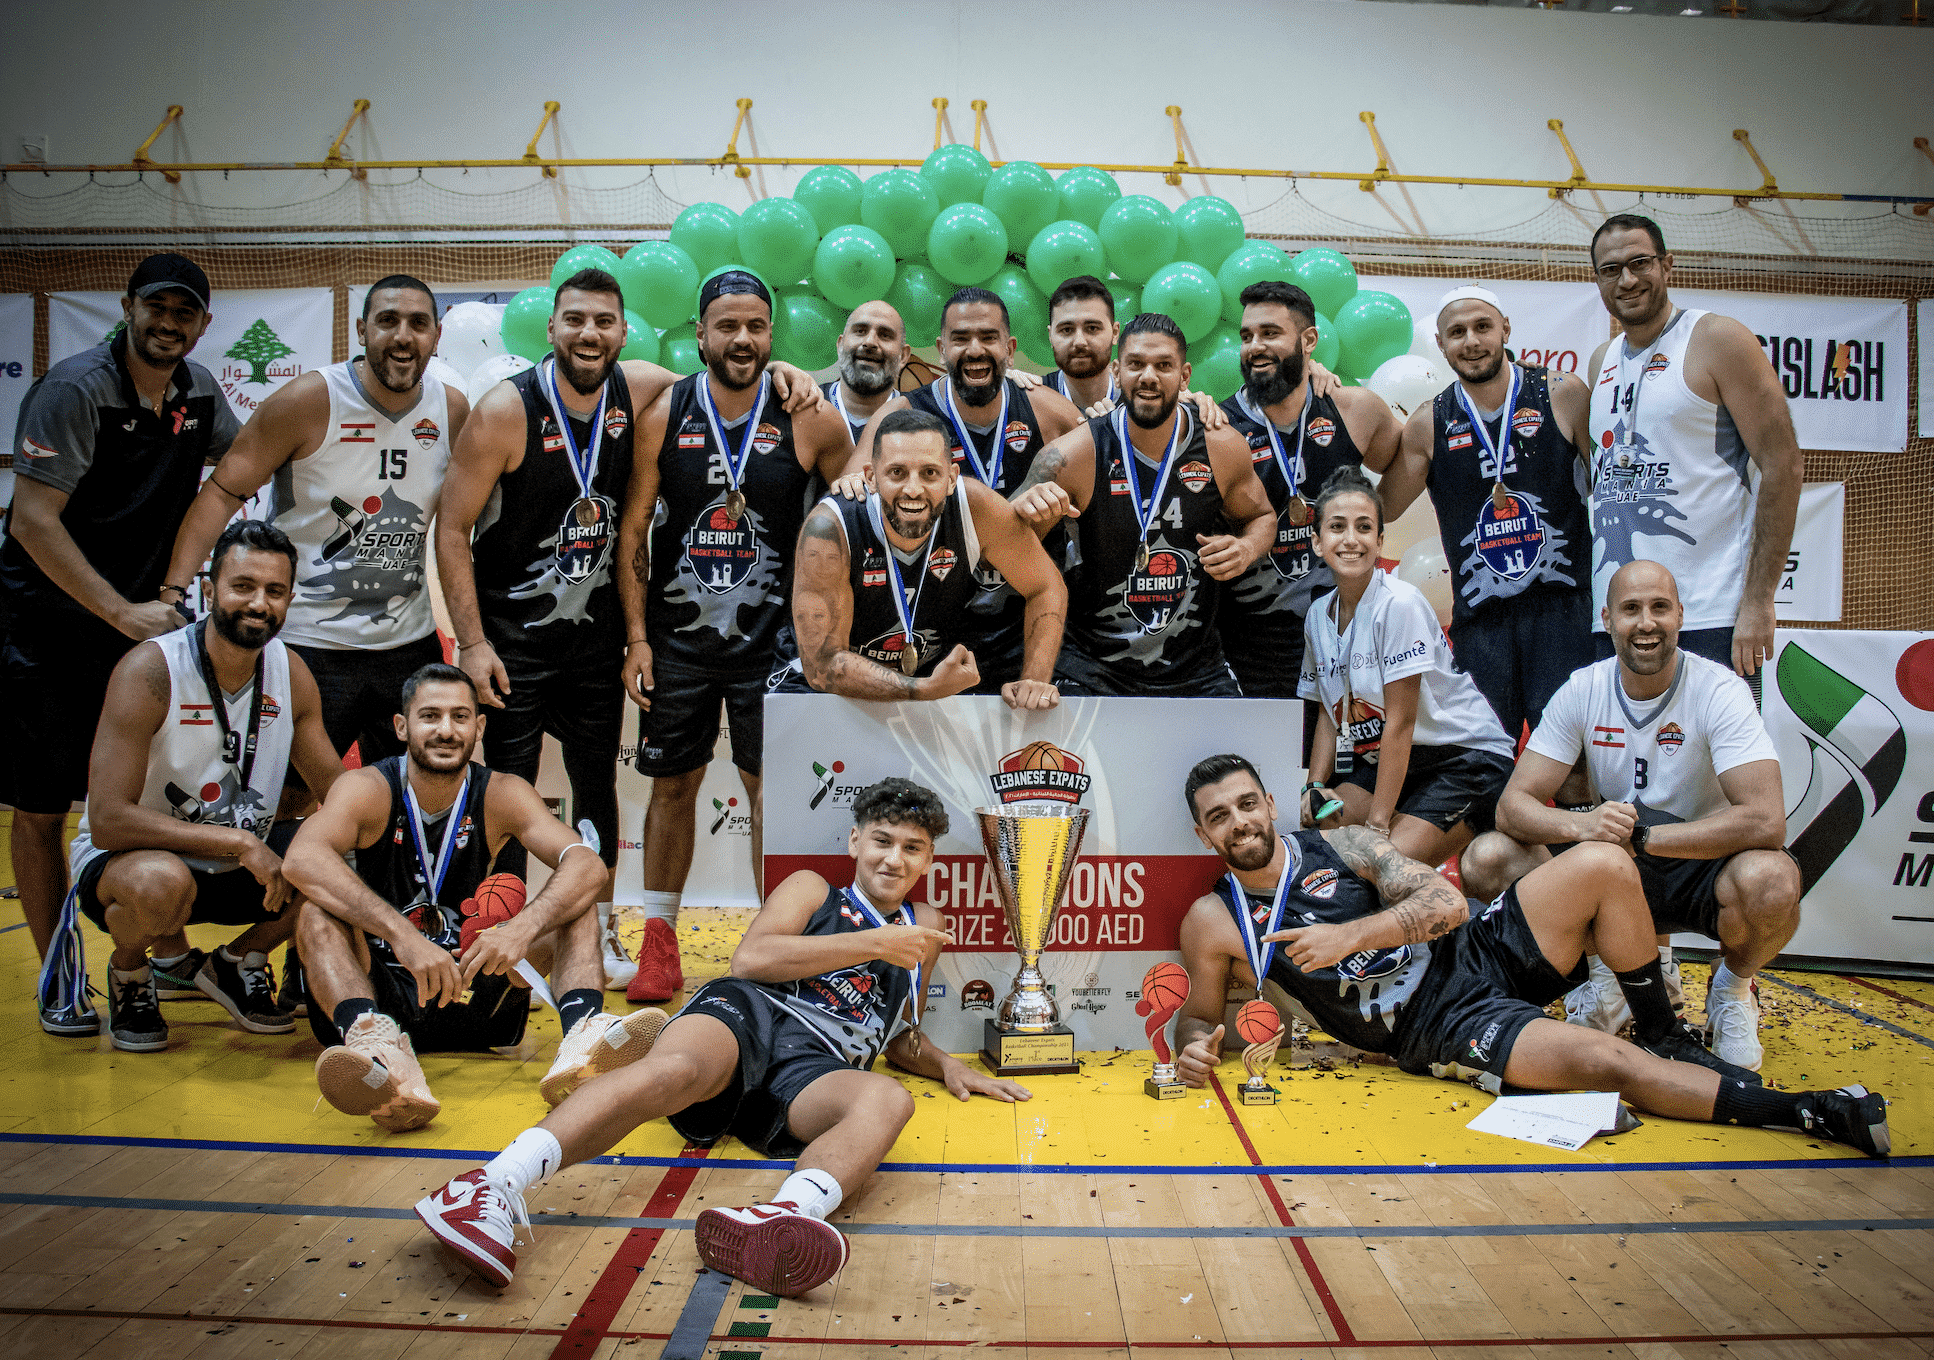 El equipo de Beirut gana el Campeonato de baloncesto de